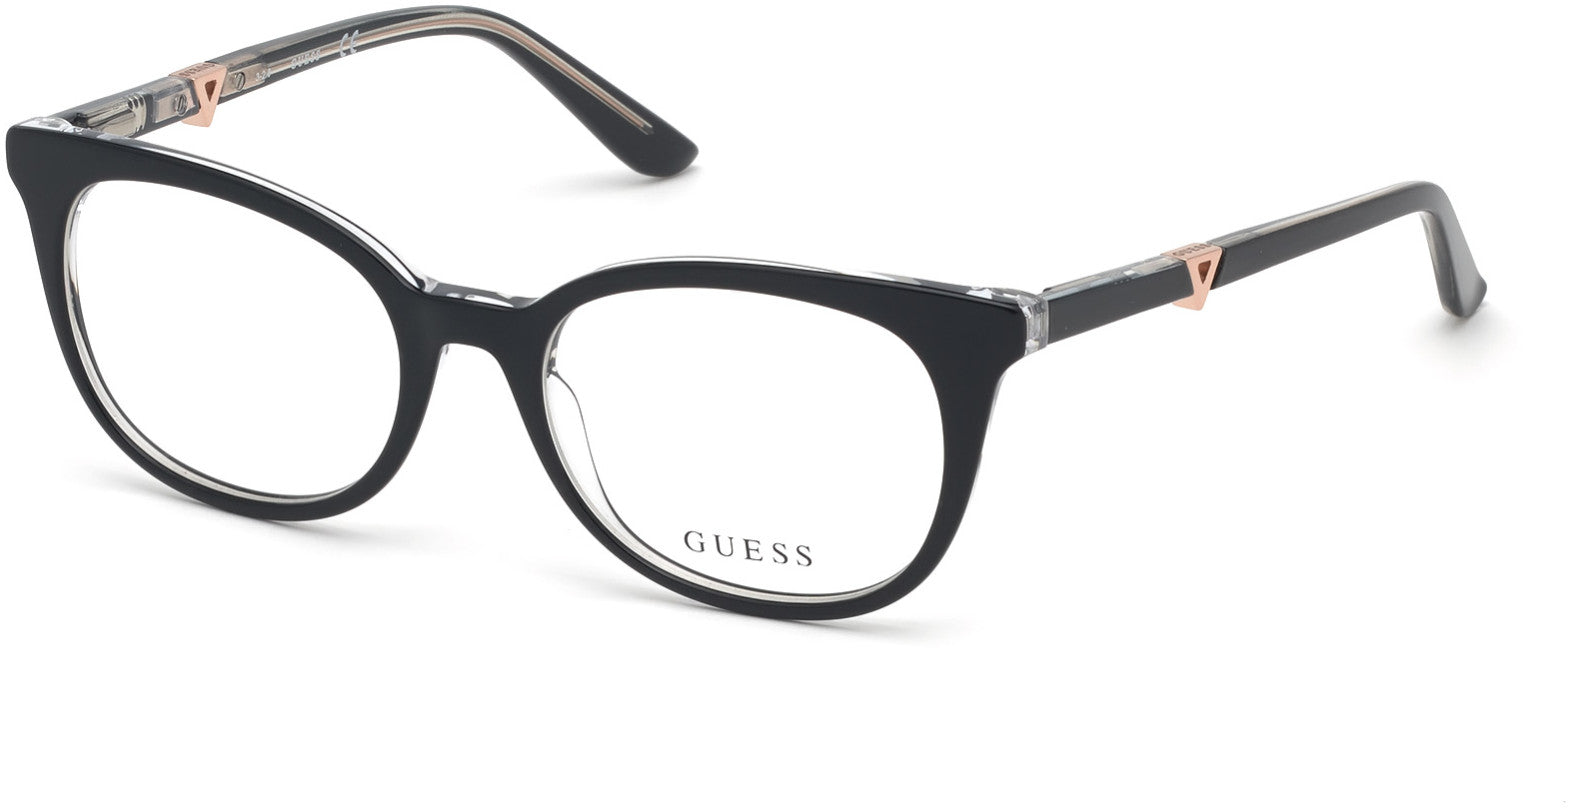 Guess GU2732 Geometric Eyeglasses 001-001 - Shiny Black